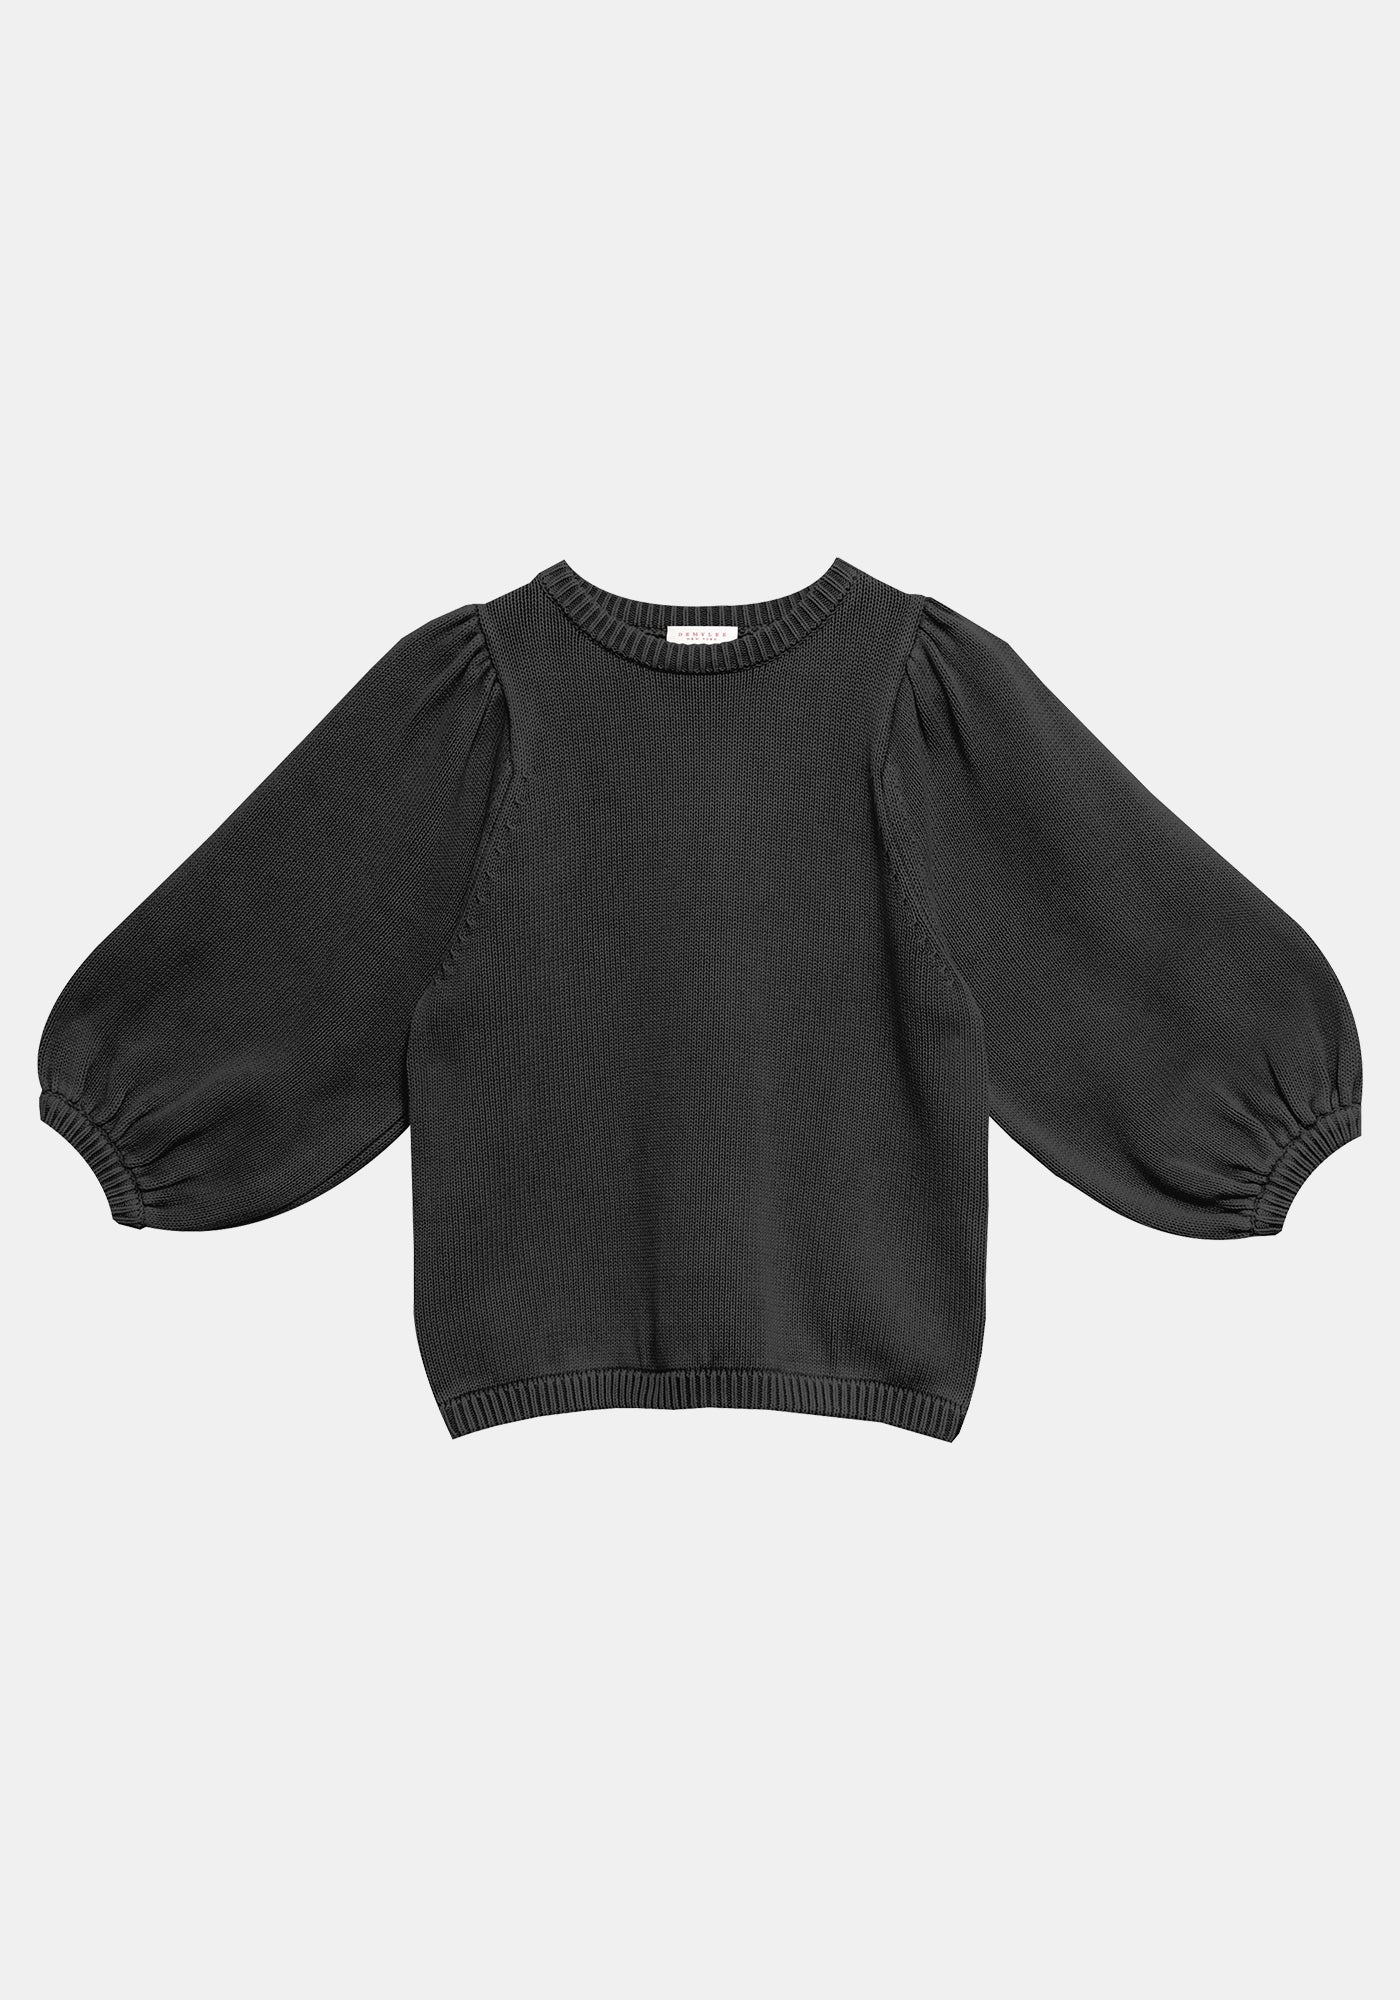 Vayn Cotton Sweater